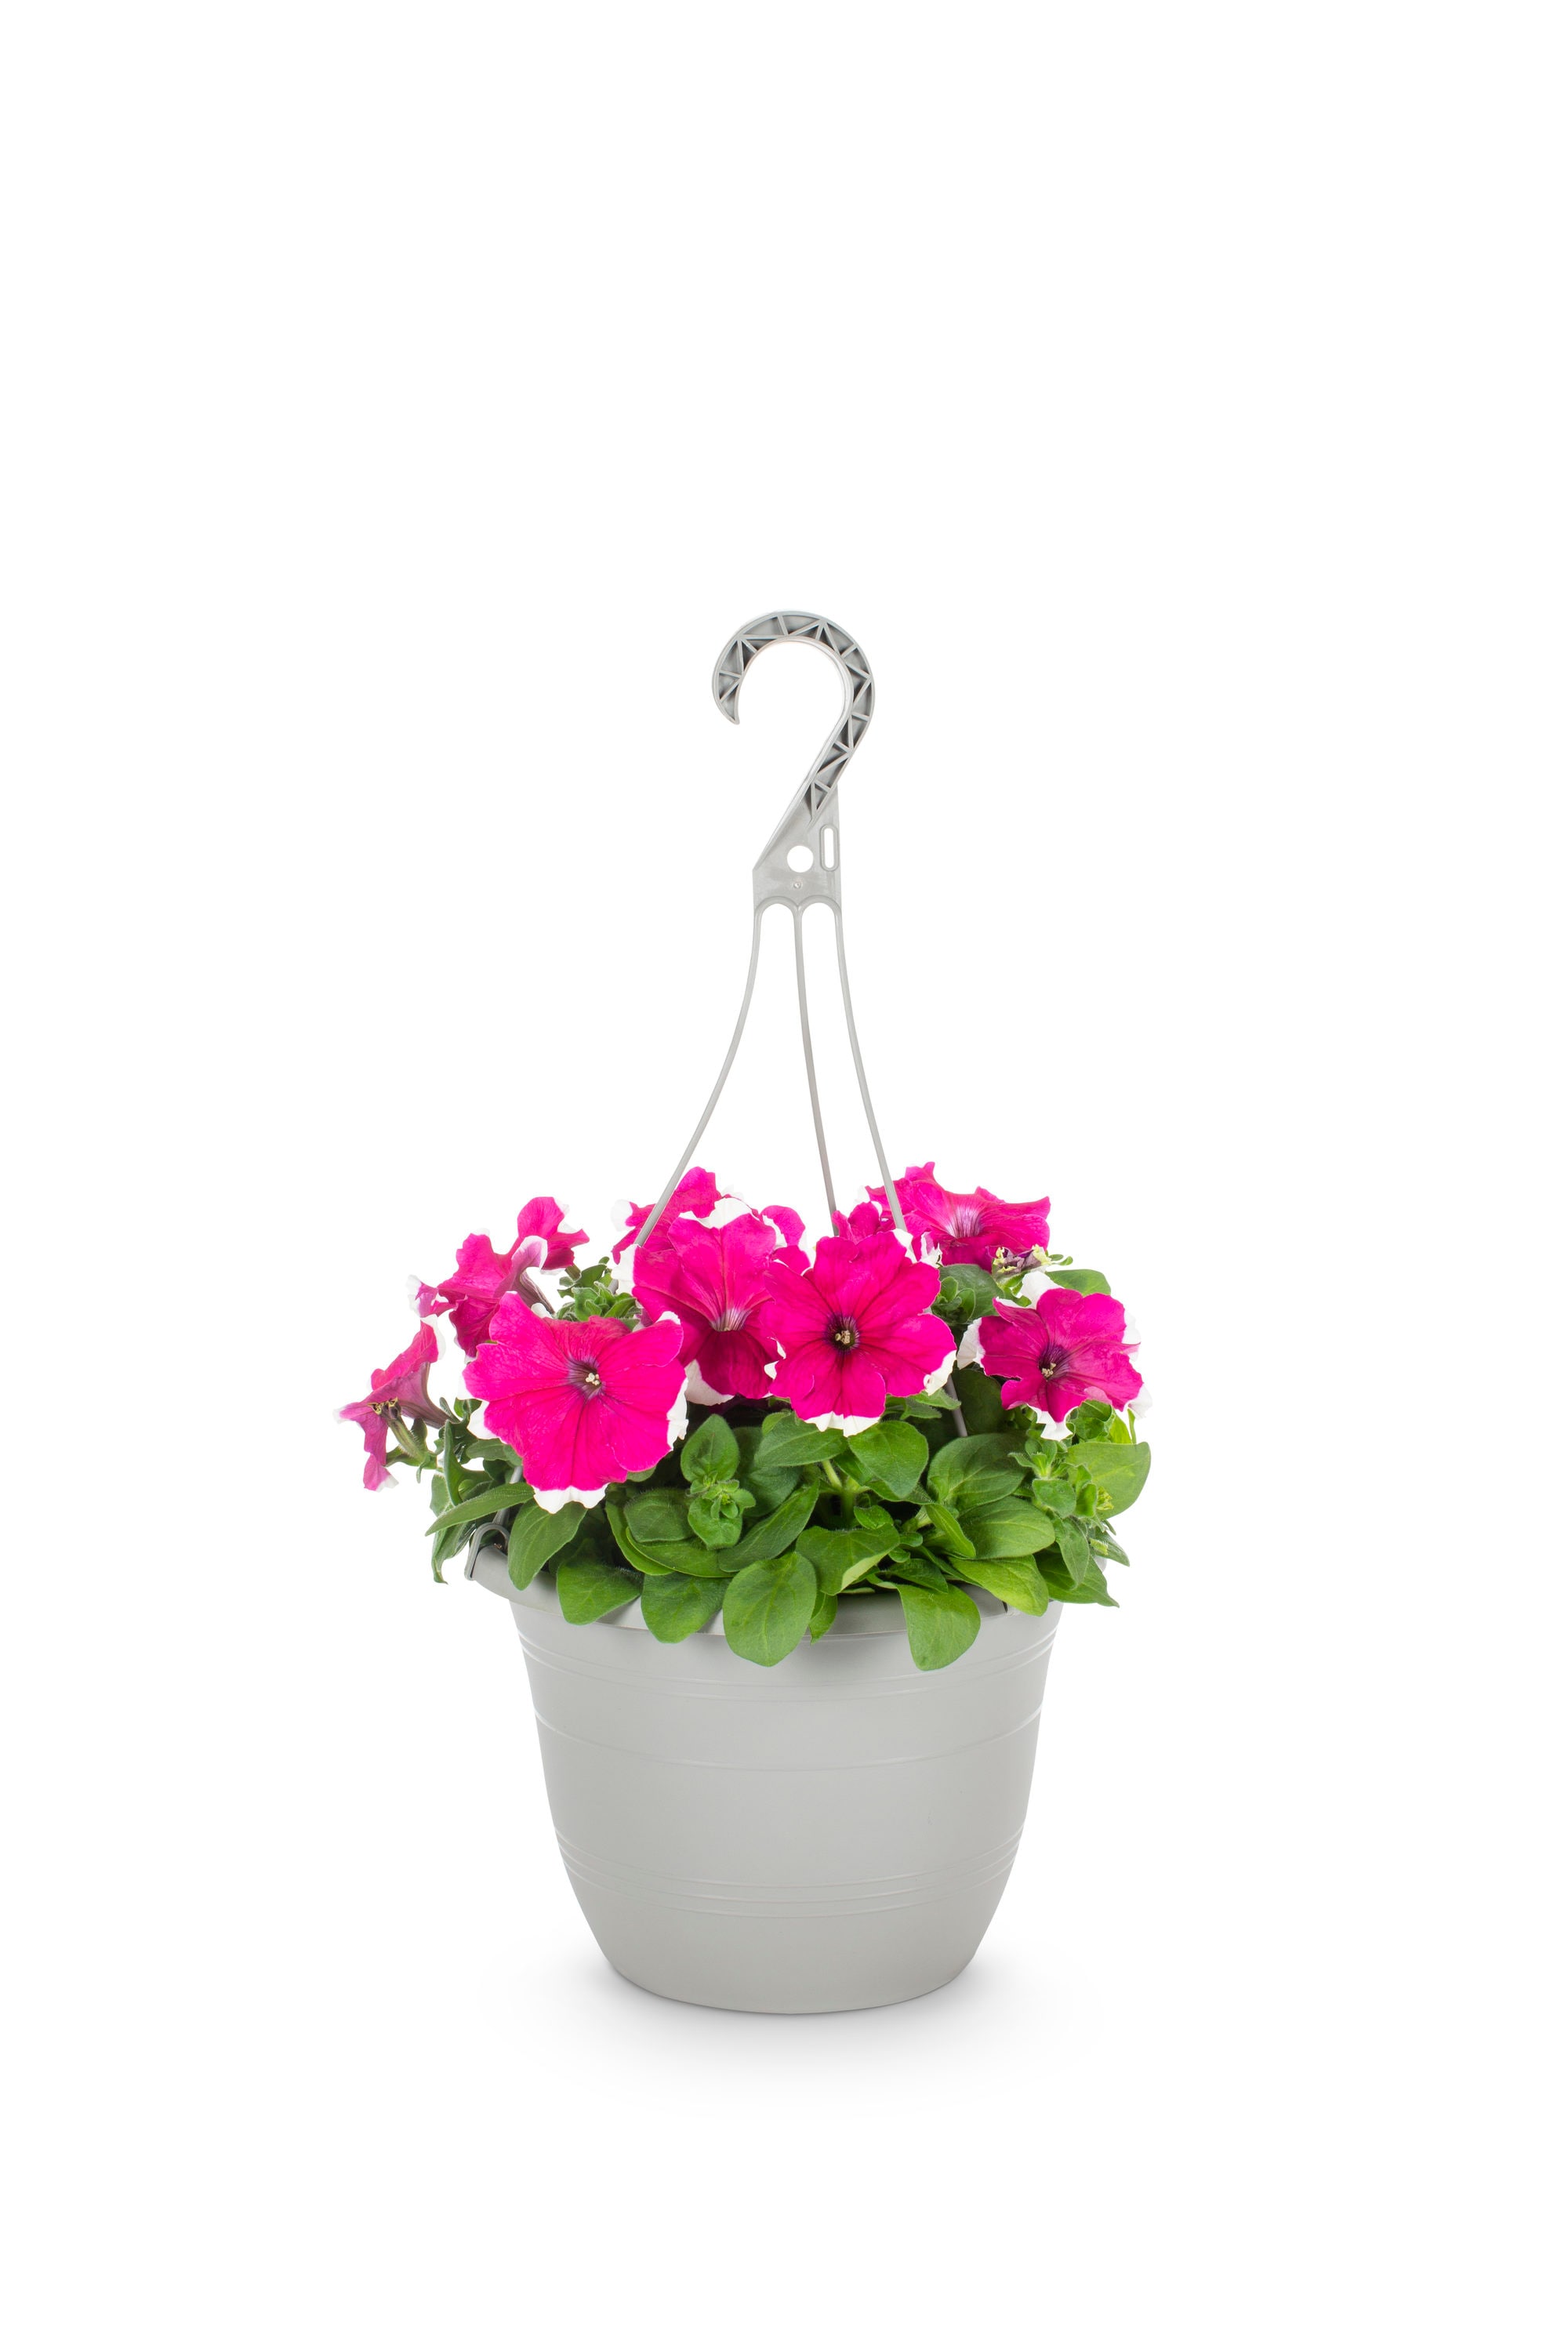 Image of Petunias hanging basket